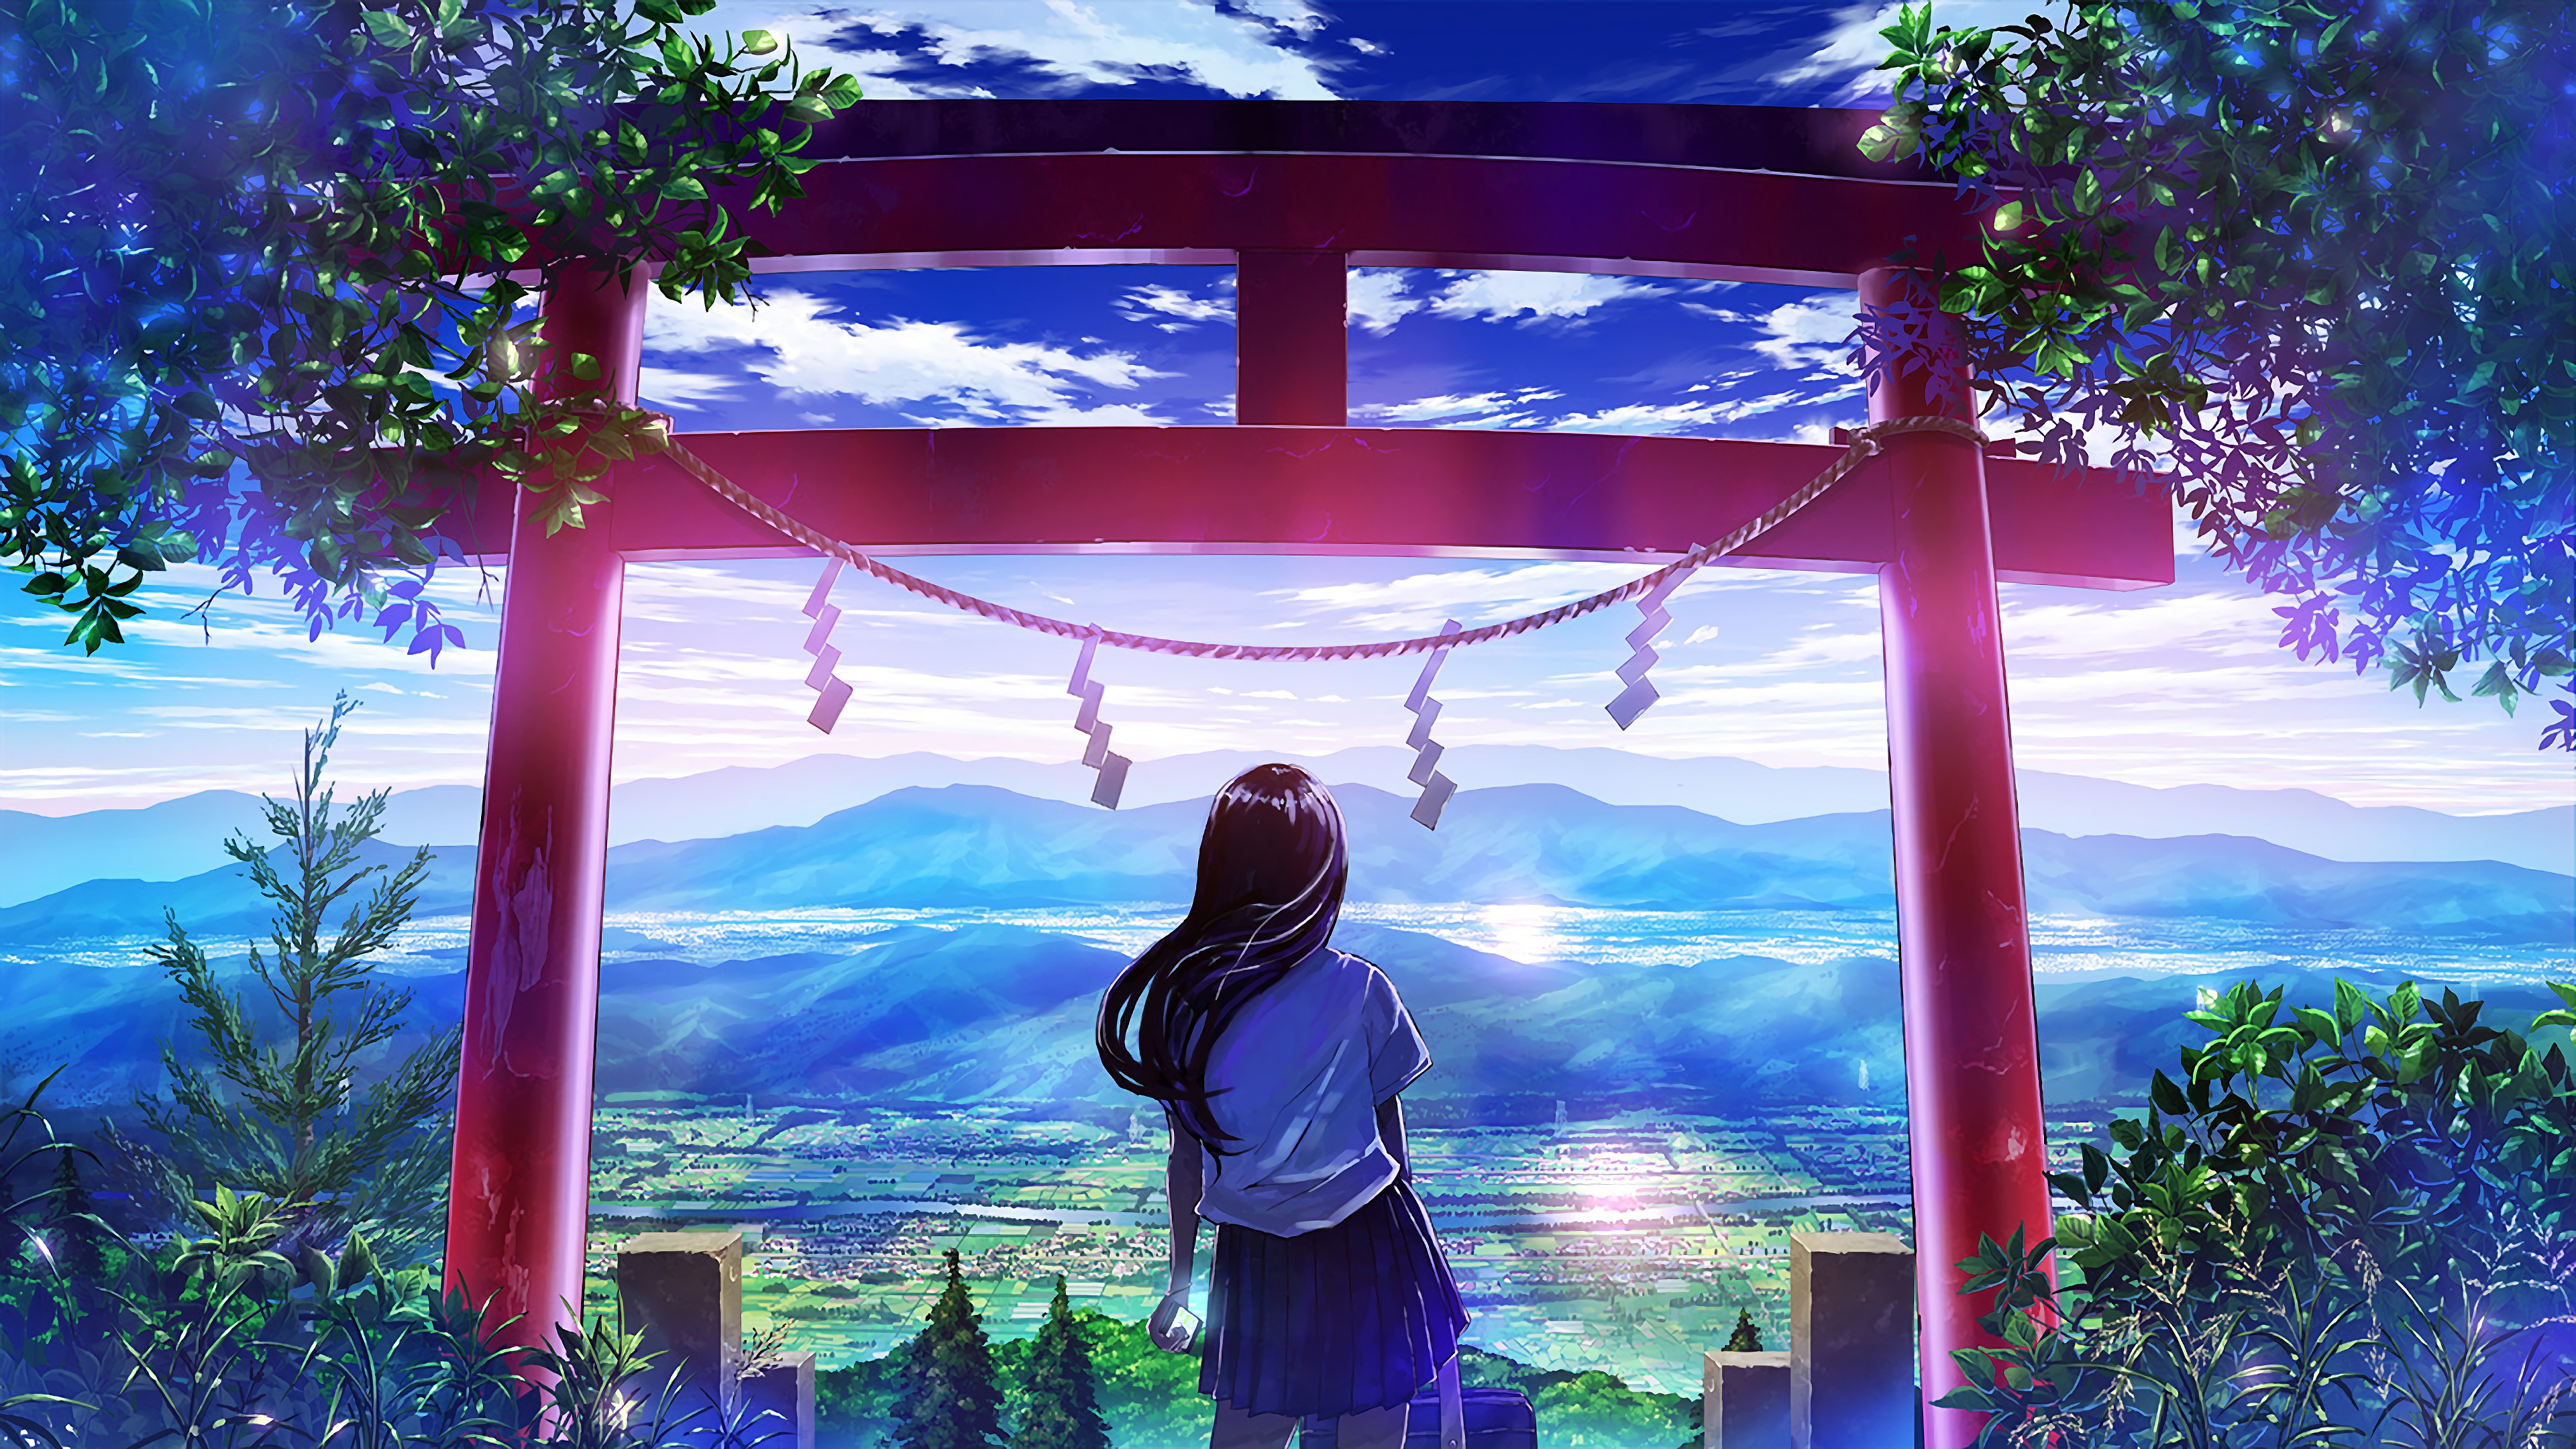 Anime Japanese Gate Shrine Girl Scenery 4k 3840x2160 Wallpaper 25